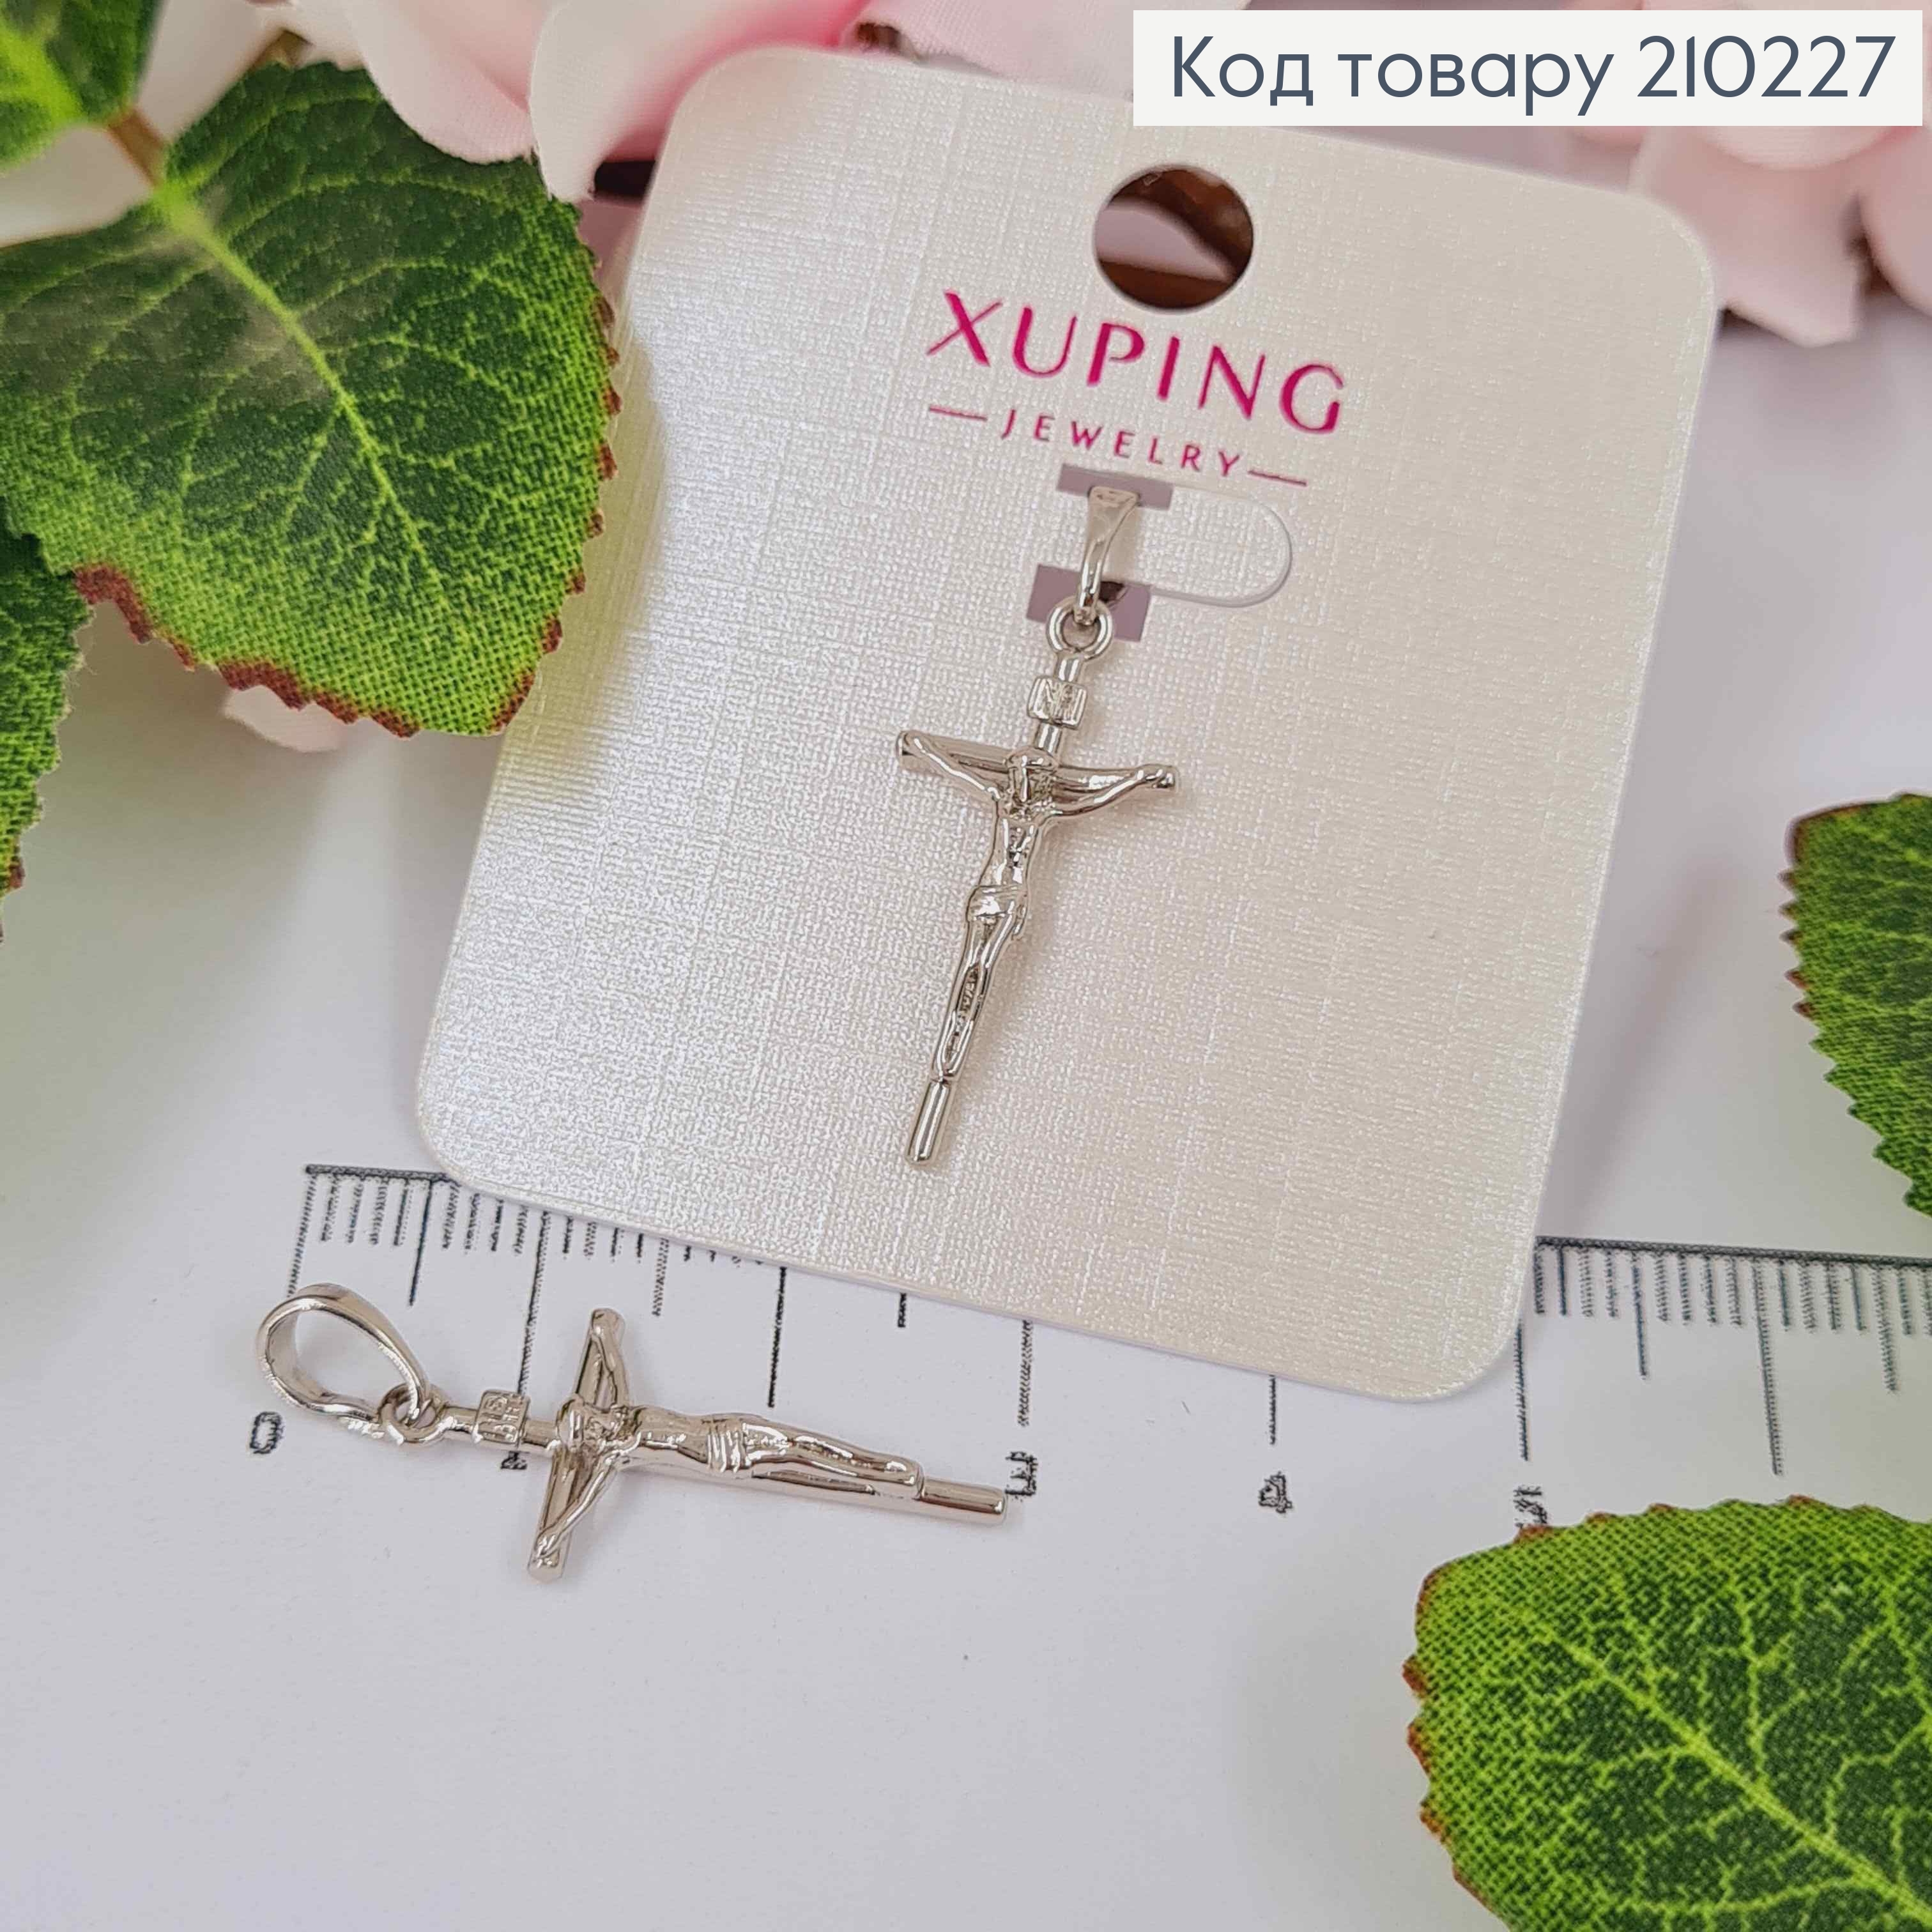 Крестик родованный, с распятием, размер 2*1,2см, Xuping 210227 фото 2